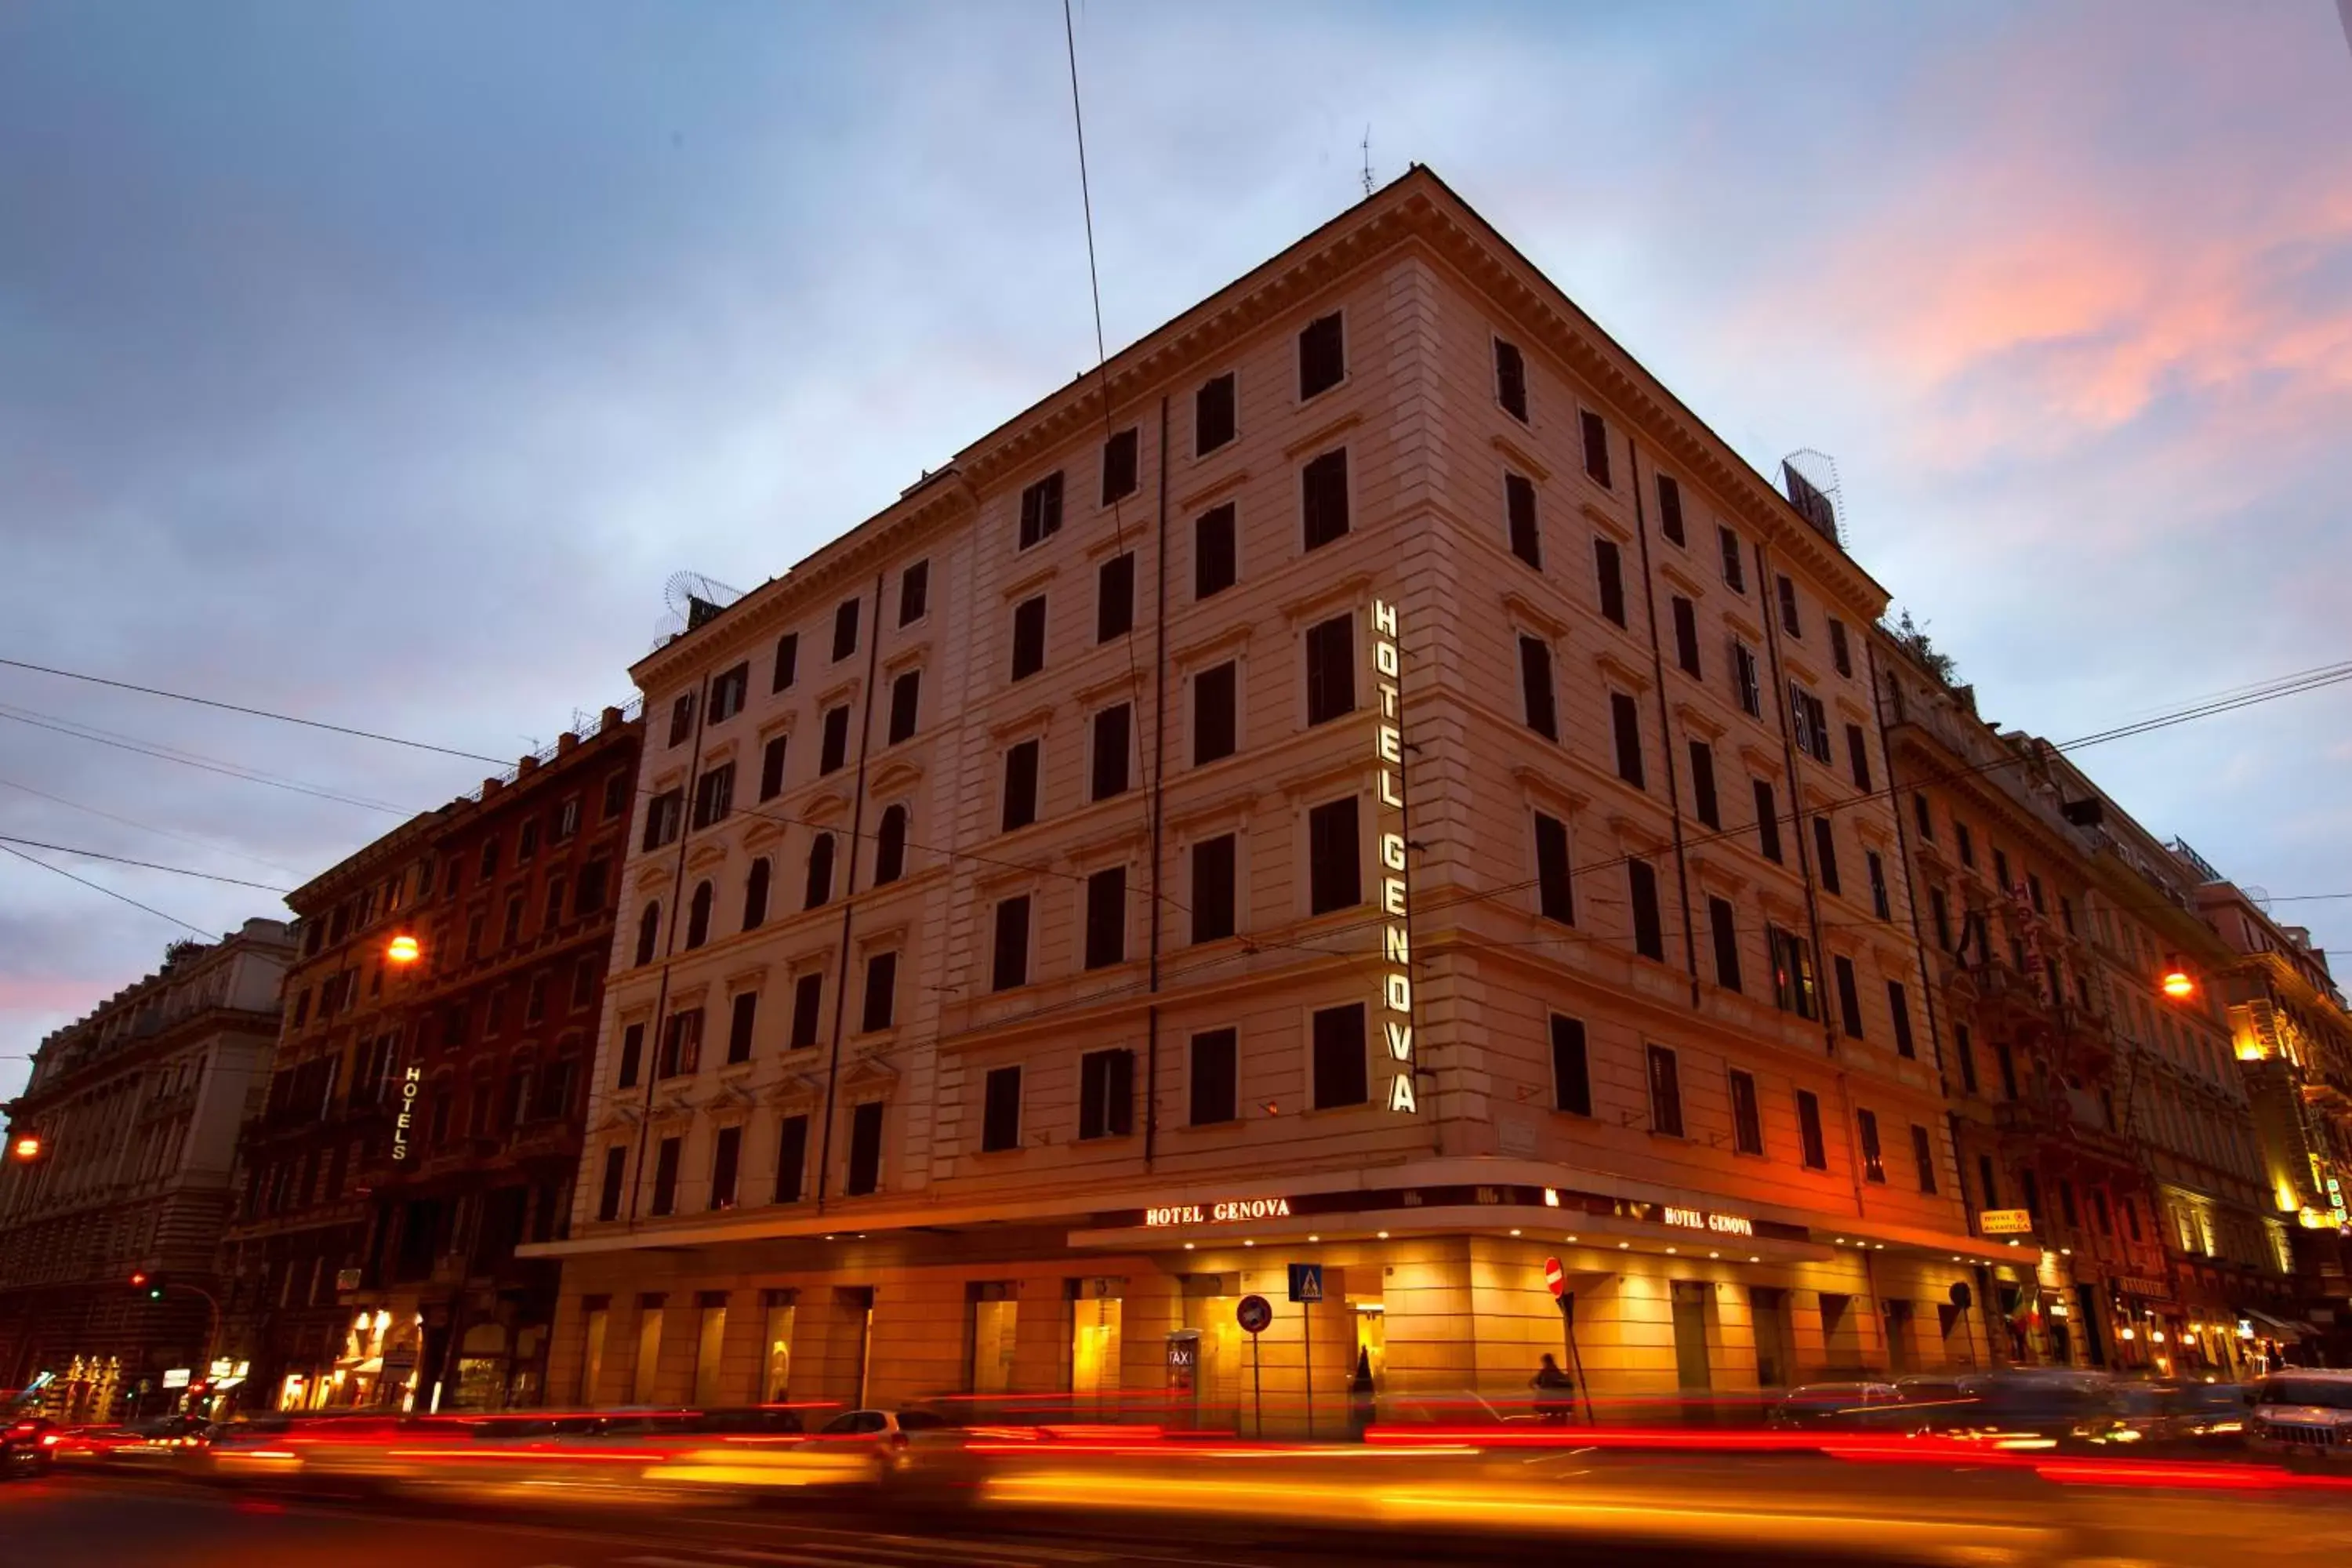 Property Building in Hotel Genova